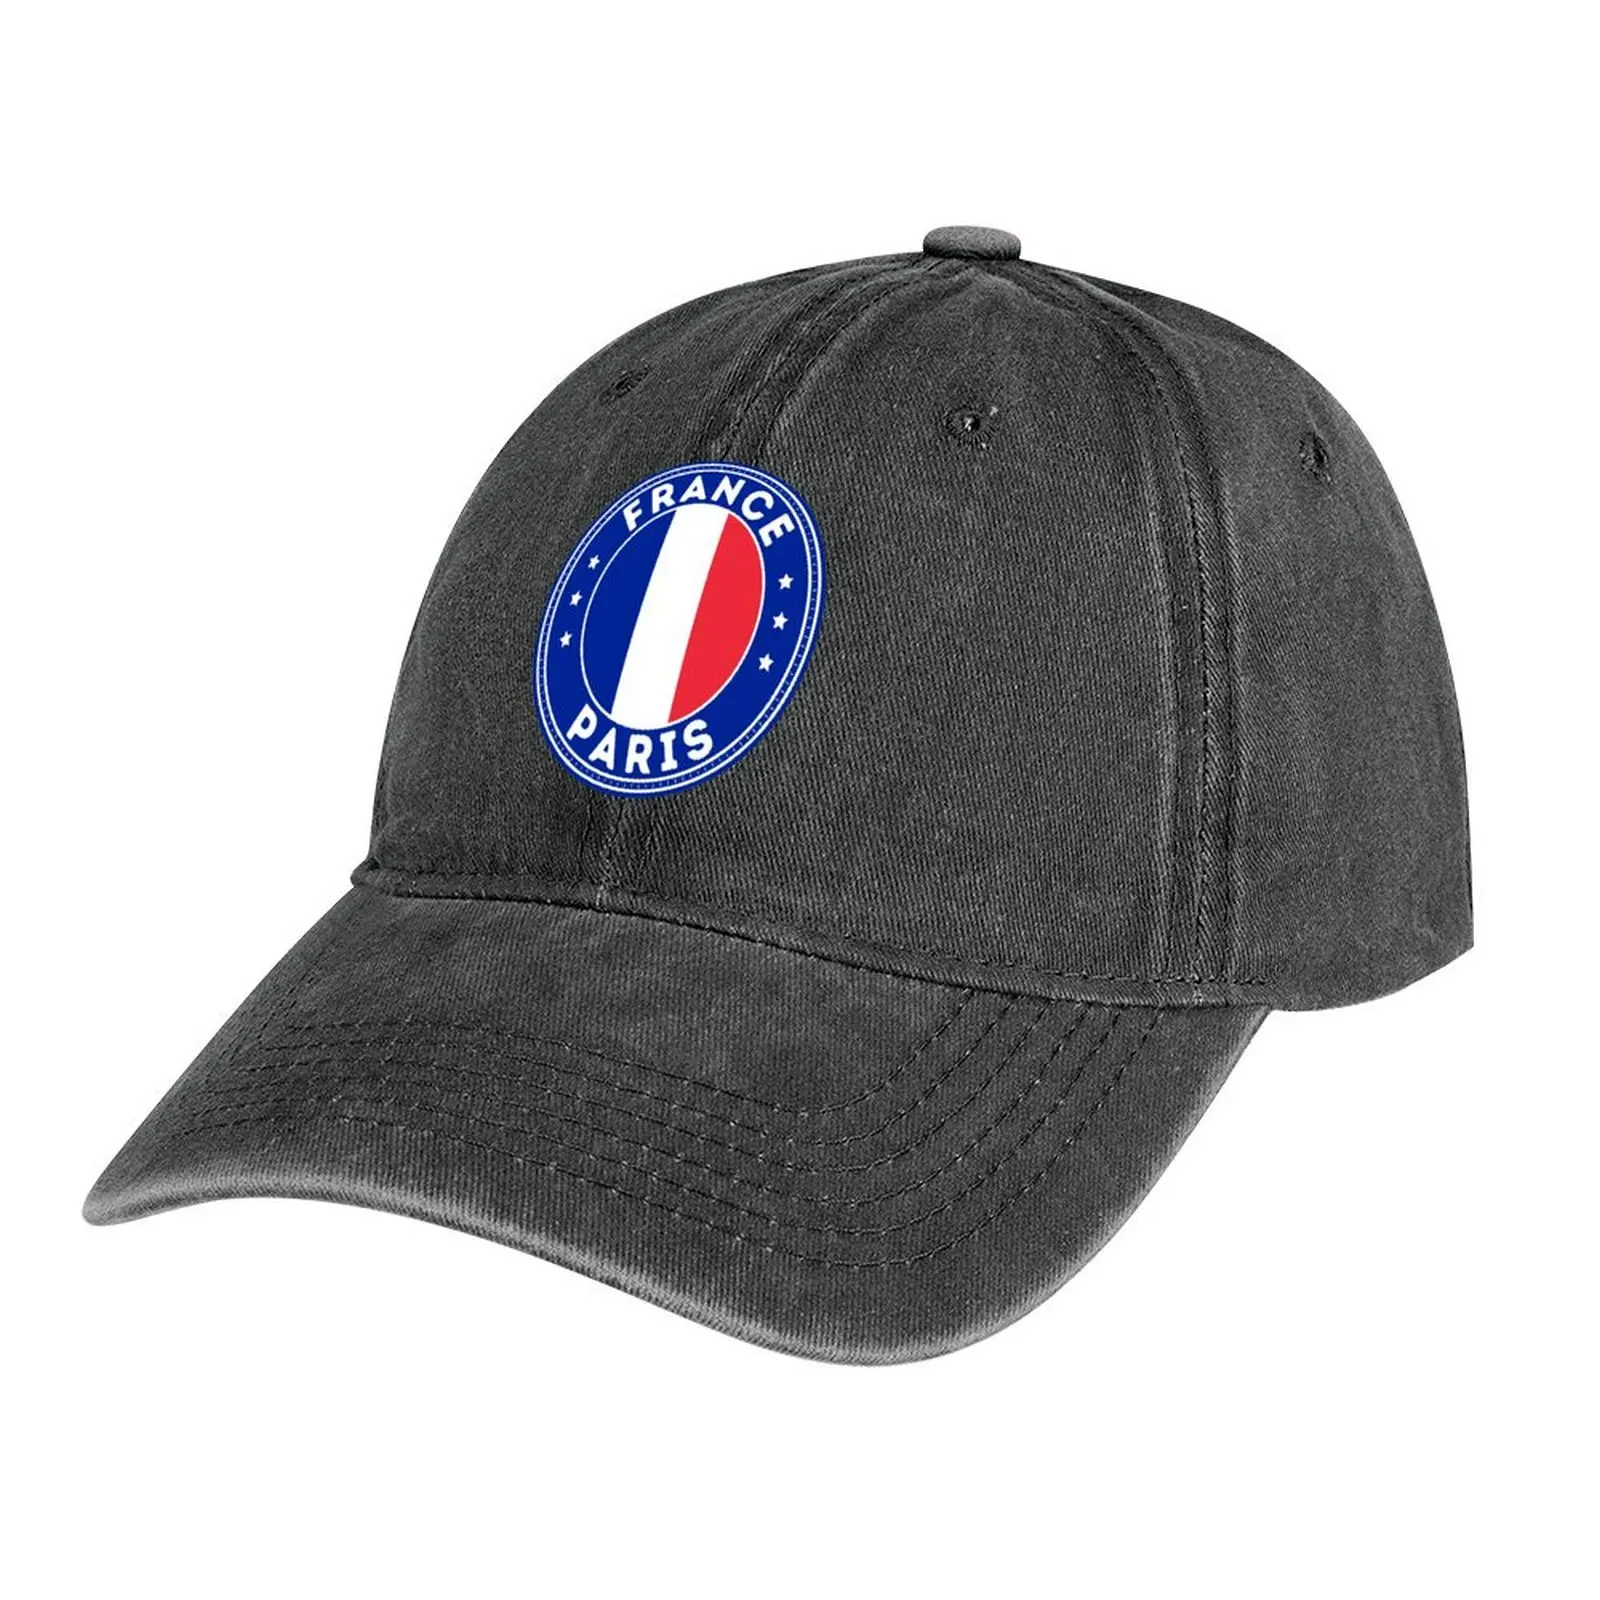 

France Paris Souvenir Cowboy Hat party Hat Luxury Brand Uv Protection Solar Hat Men Women's